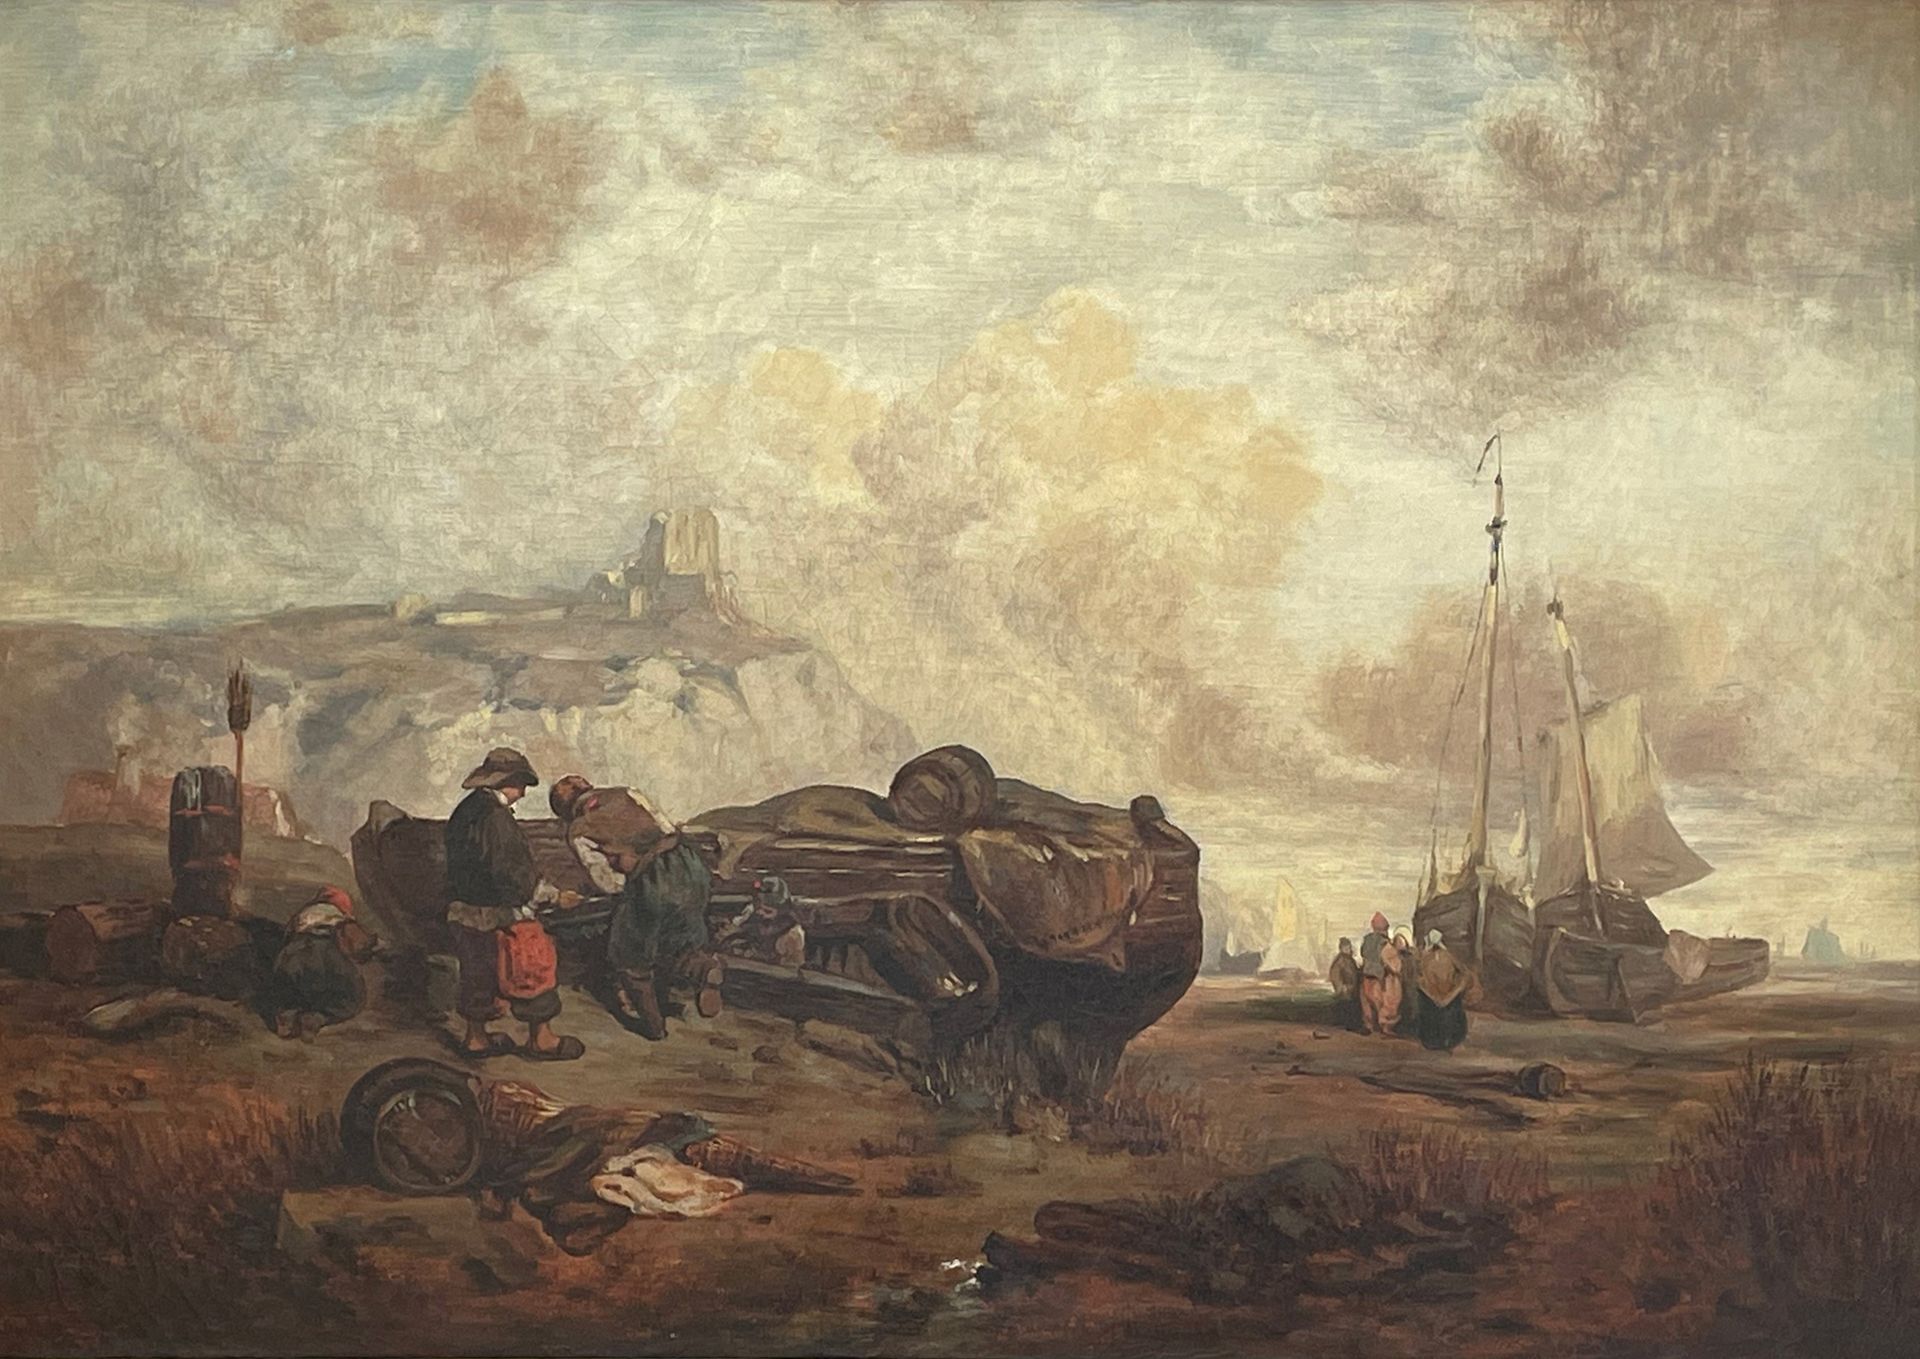 École du Nord, XIXe siècle 
河岸上的填缝场景
布面油画
39 x 57 cm。